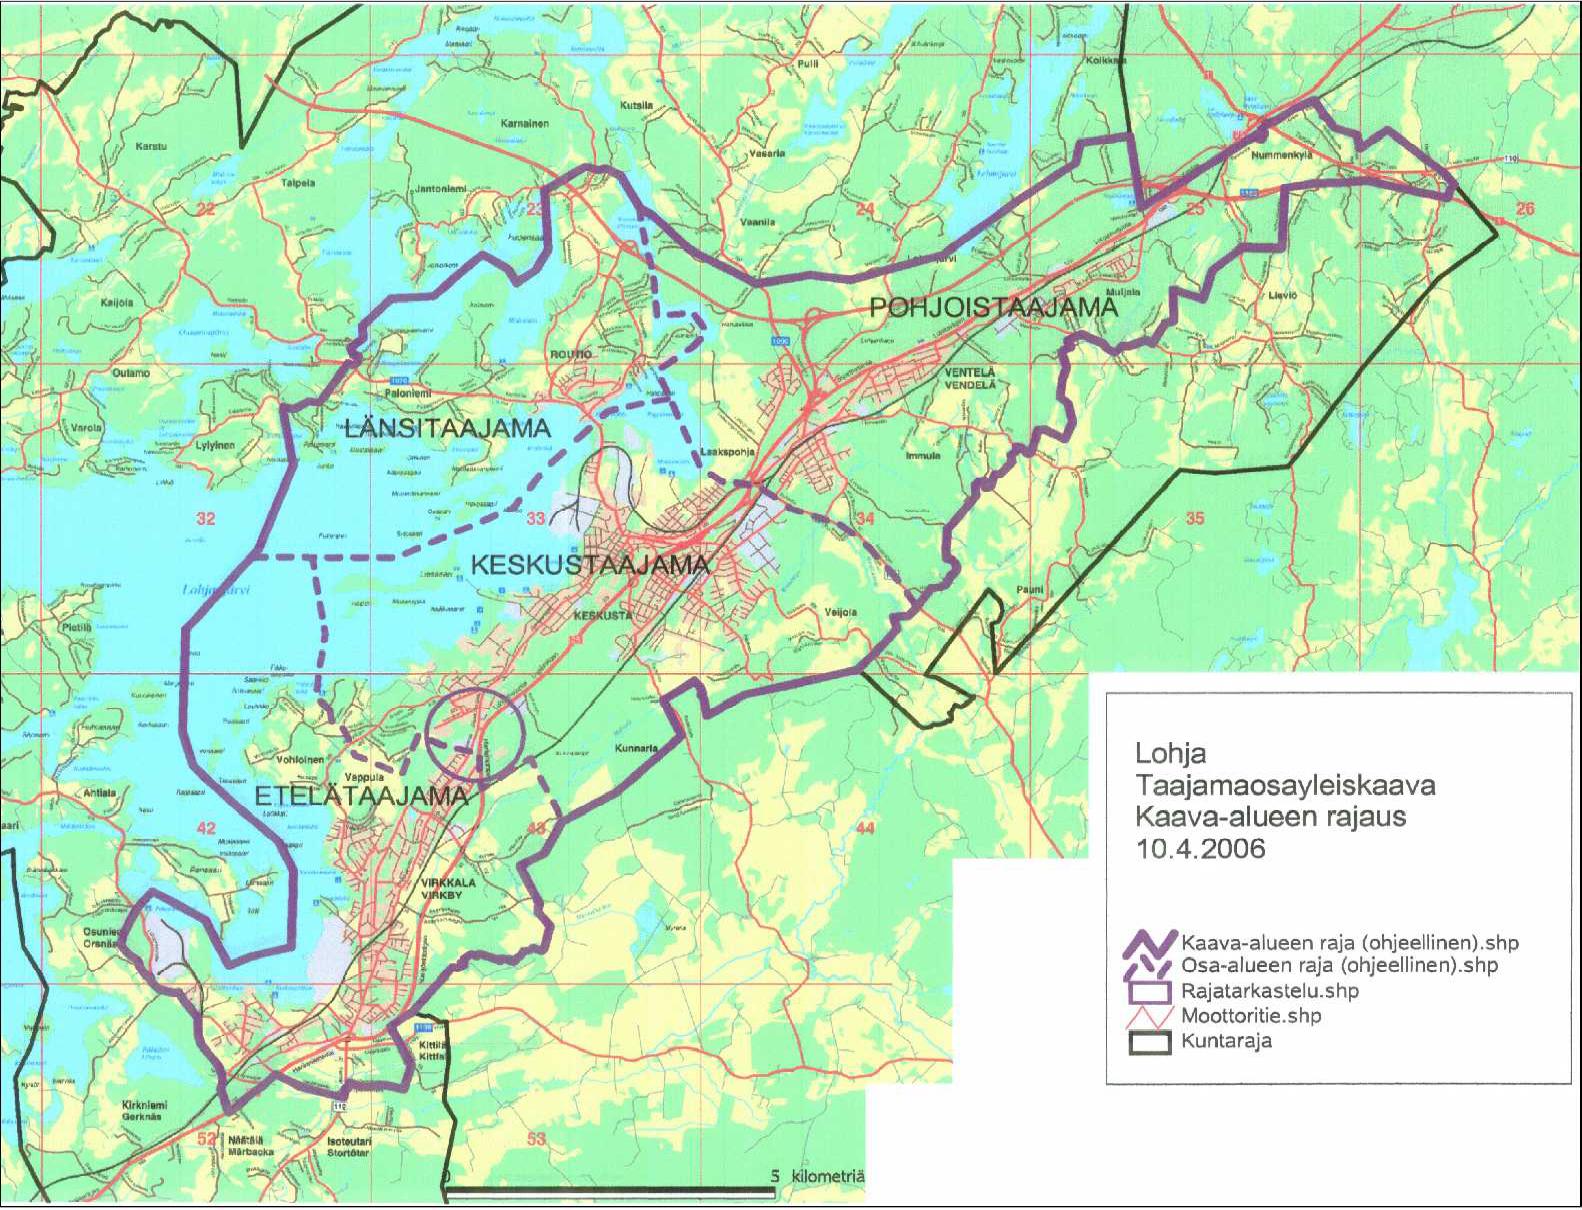 YLEISKAAVOITUS 1. Taajamaosayleiskaava Kaupunginvaltuusto hyväksyi 10.11.2004 Lohjan kaupungin maankäytön kehityskuvan, joka on pohjana taajamaosayleiskaavoi tukselle.